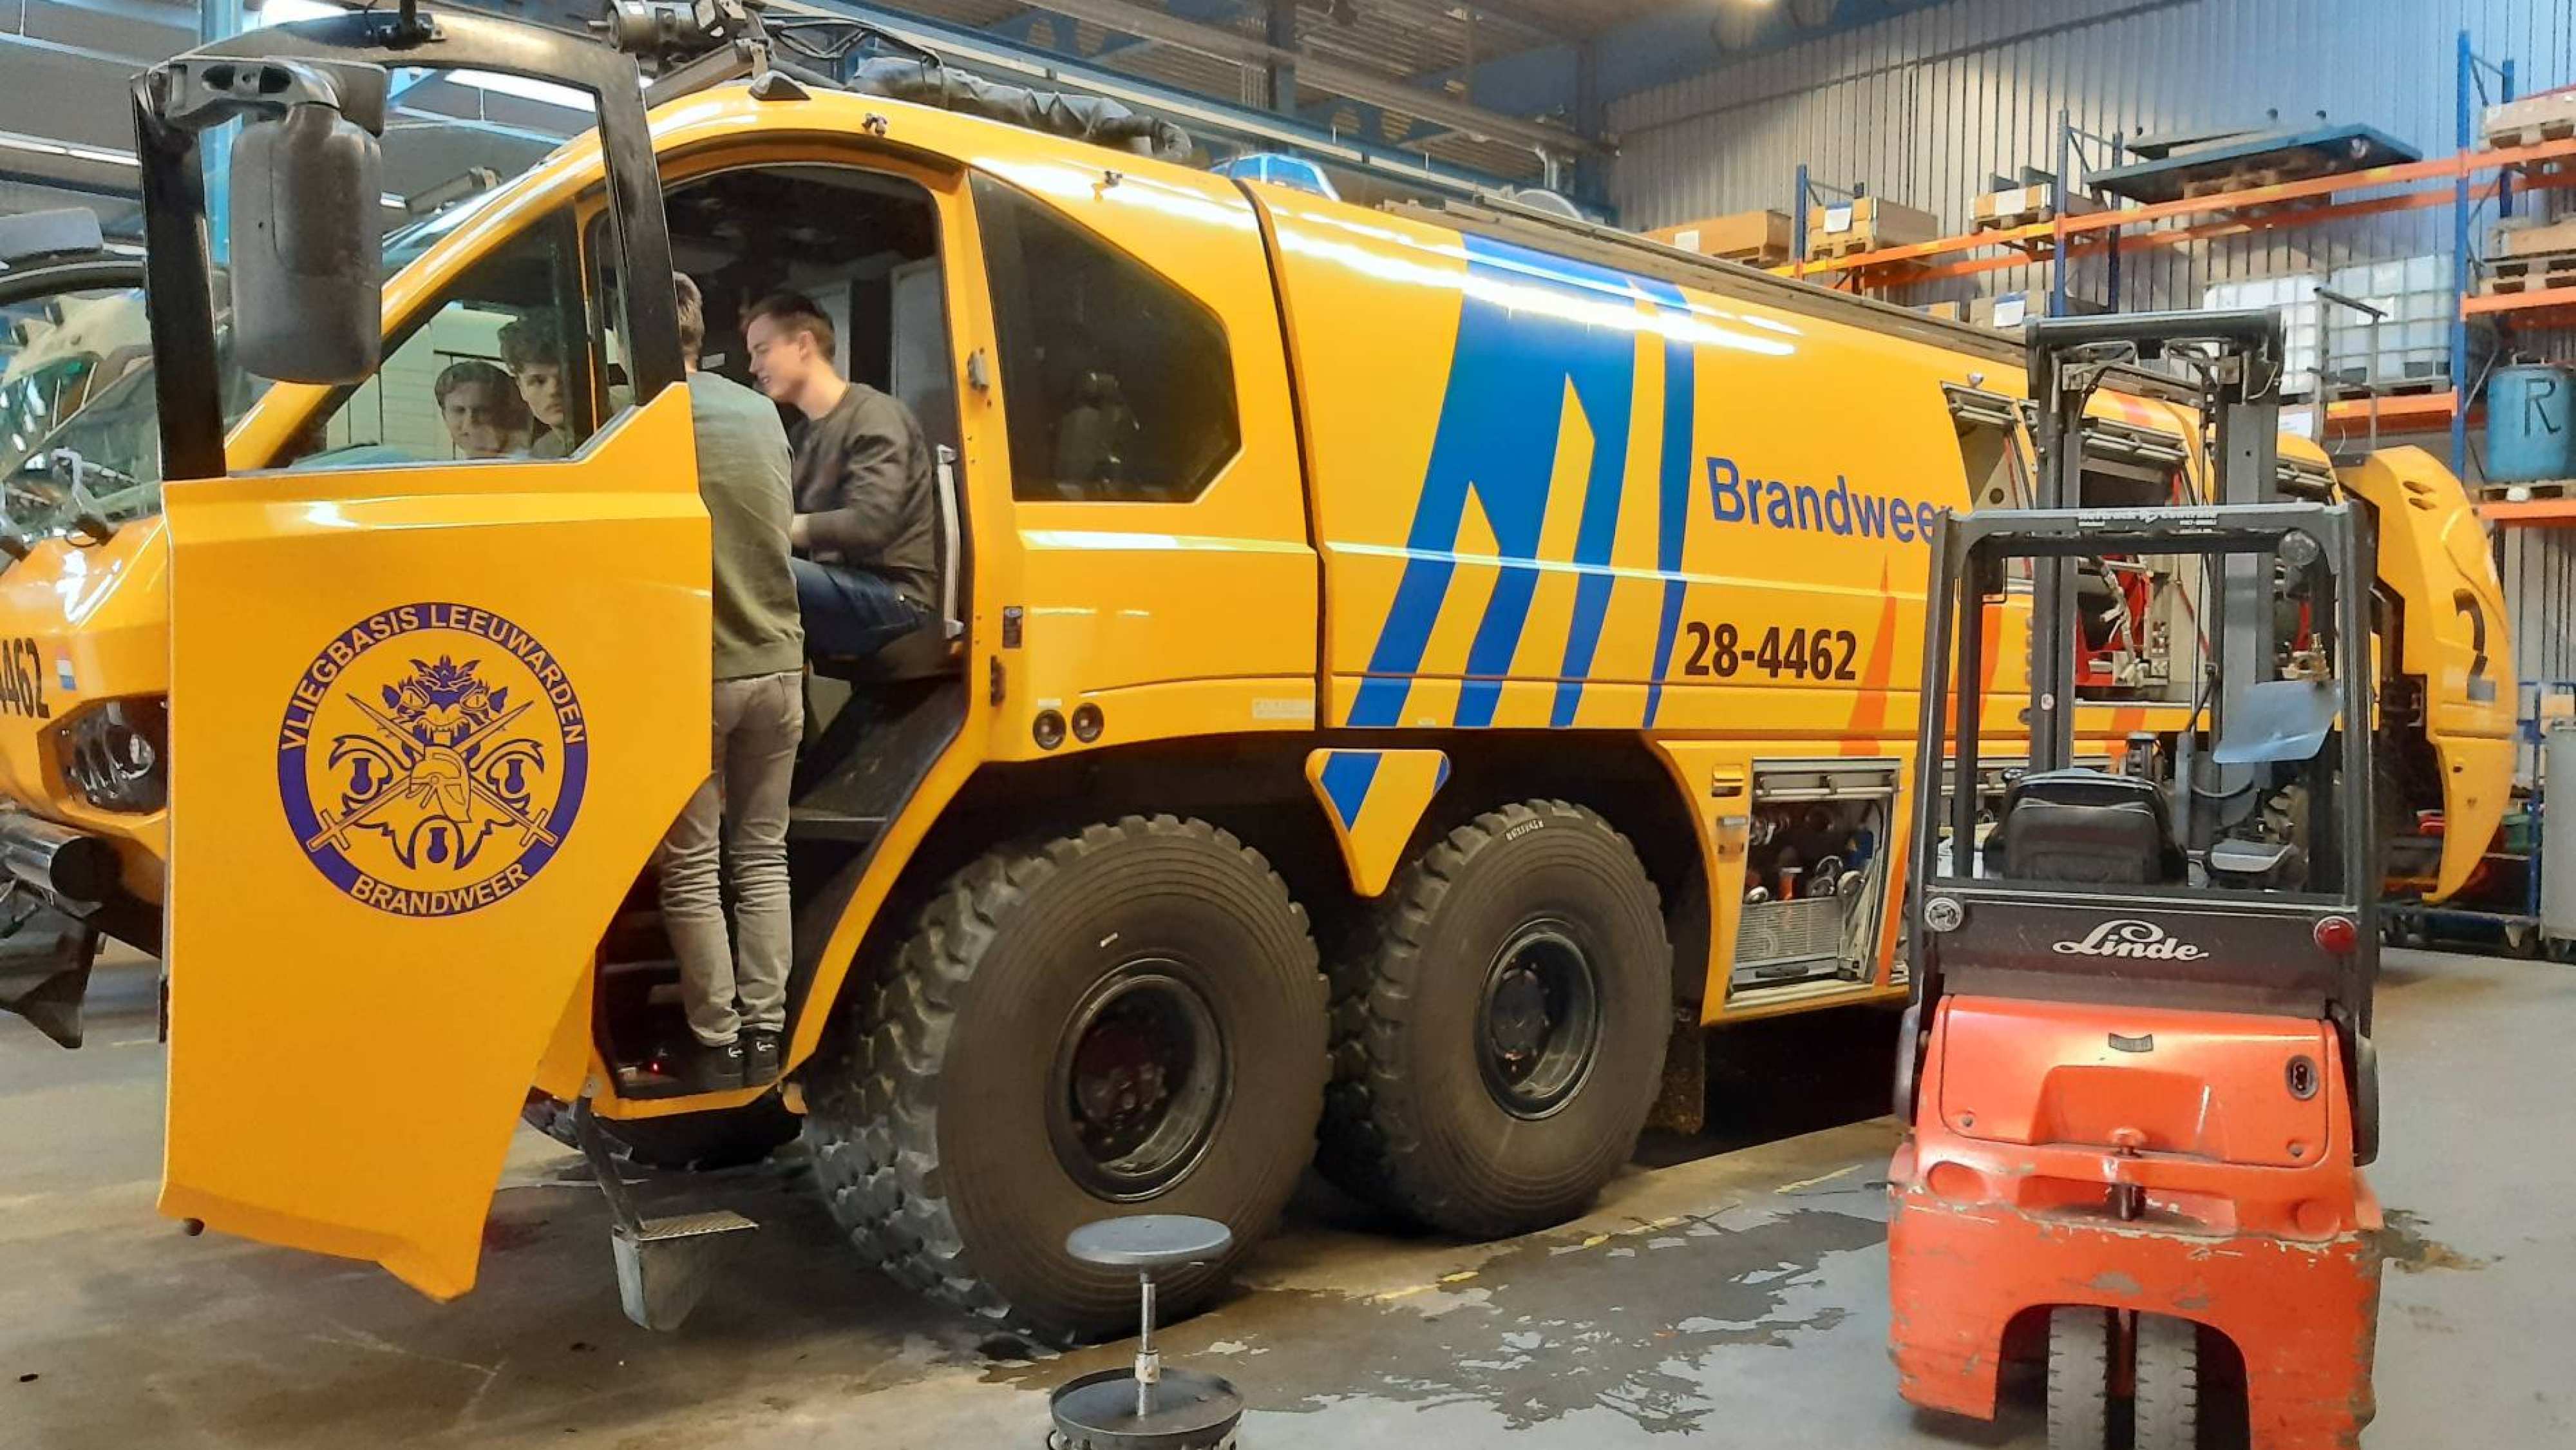 Gele brandweerauto die gebruikt wordt op vliegbasis Leeuwarden. Groep Automotive studenten van 1e-jaars project When Every Second Counts (WESC) gingen op bedrijfsbezoek bij Kenbri. Zij produceren en ontwerpen brandweerauto’s.